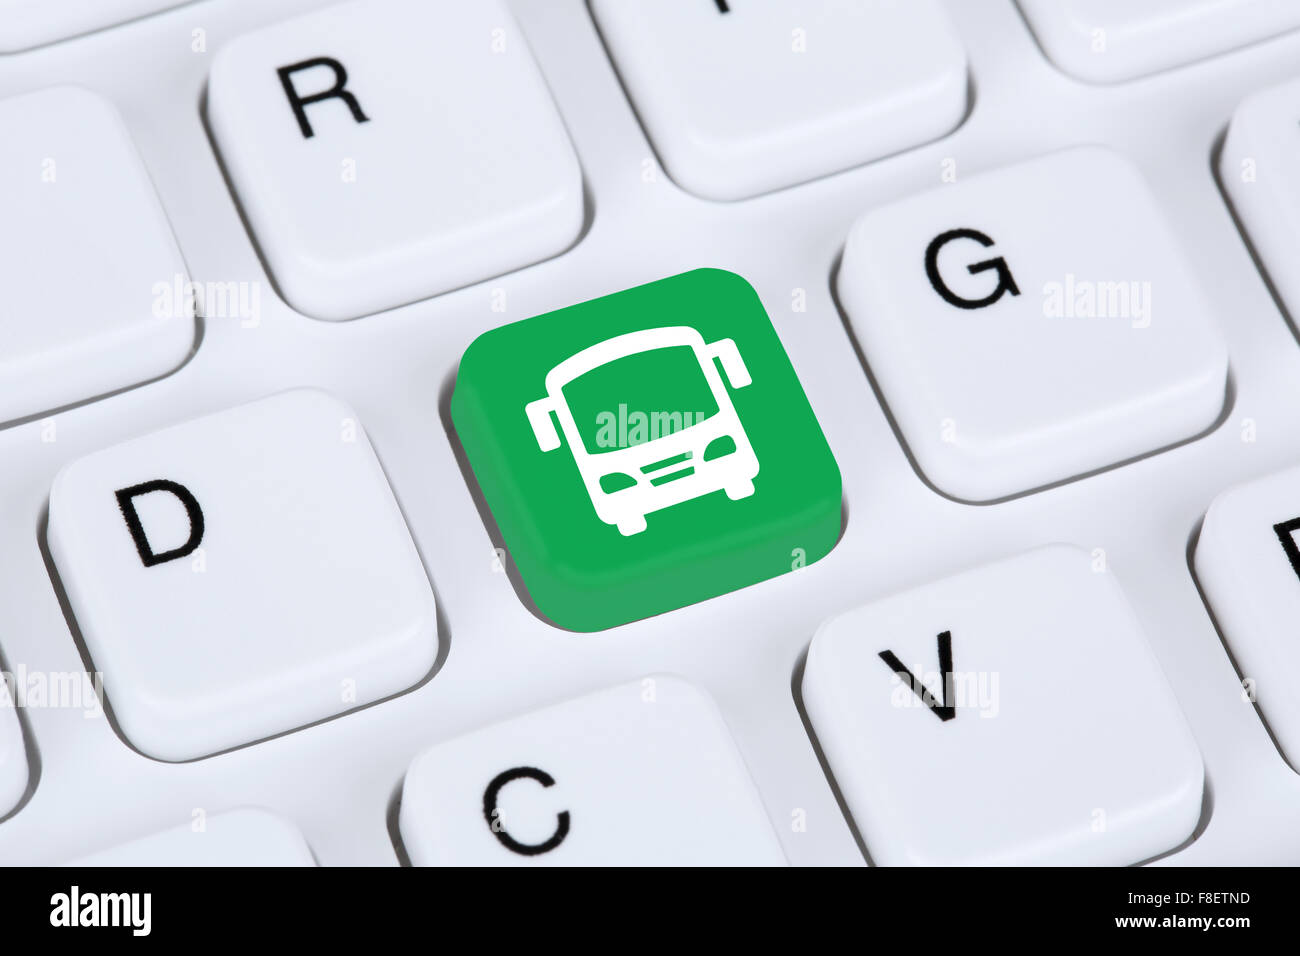 Réserver un bus ou autocar voyage voyage en ligne La réservation internet trafic computer concept Banque D'Images